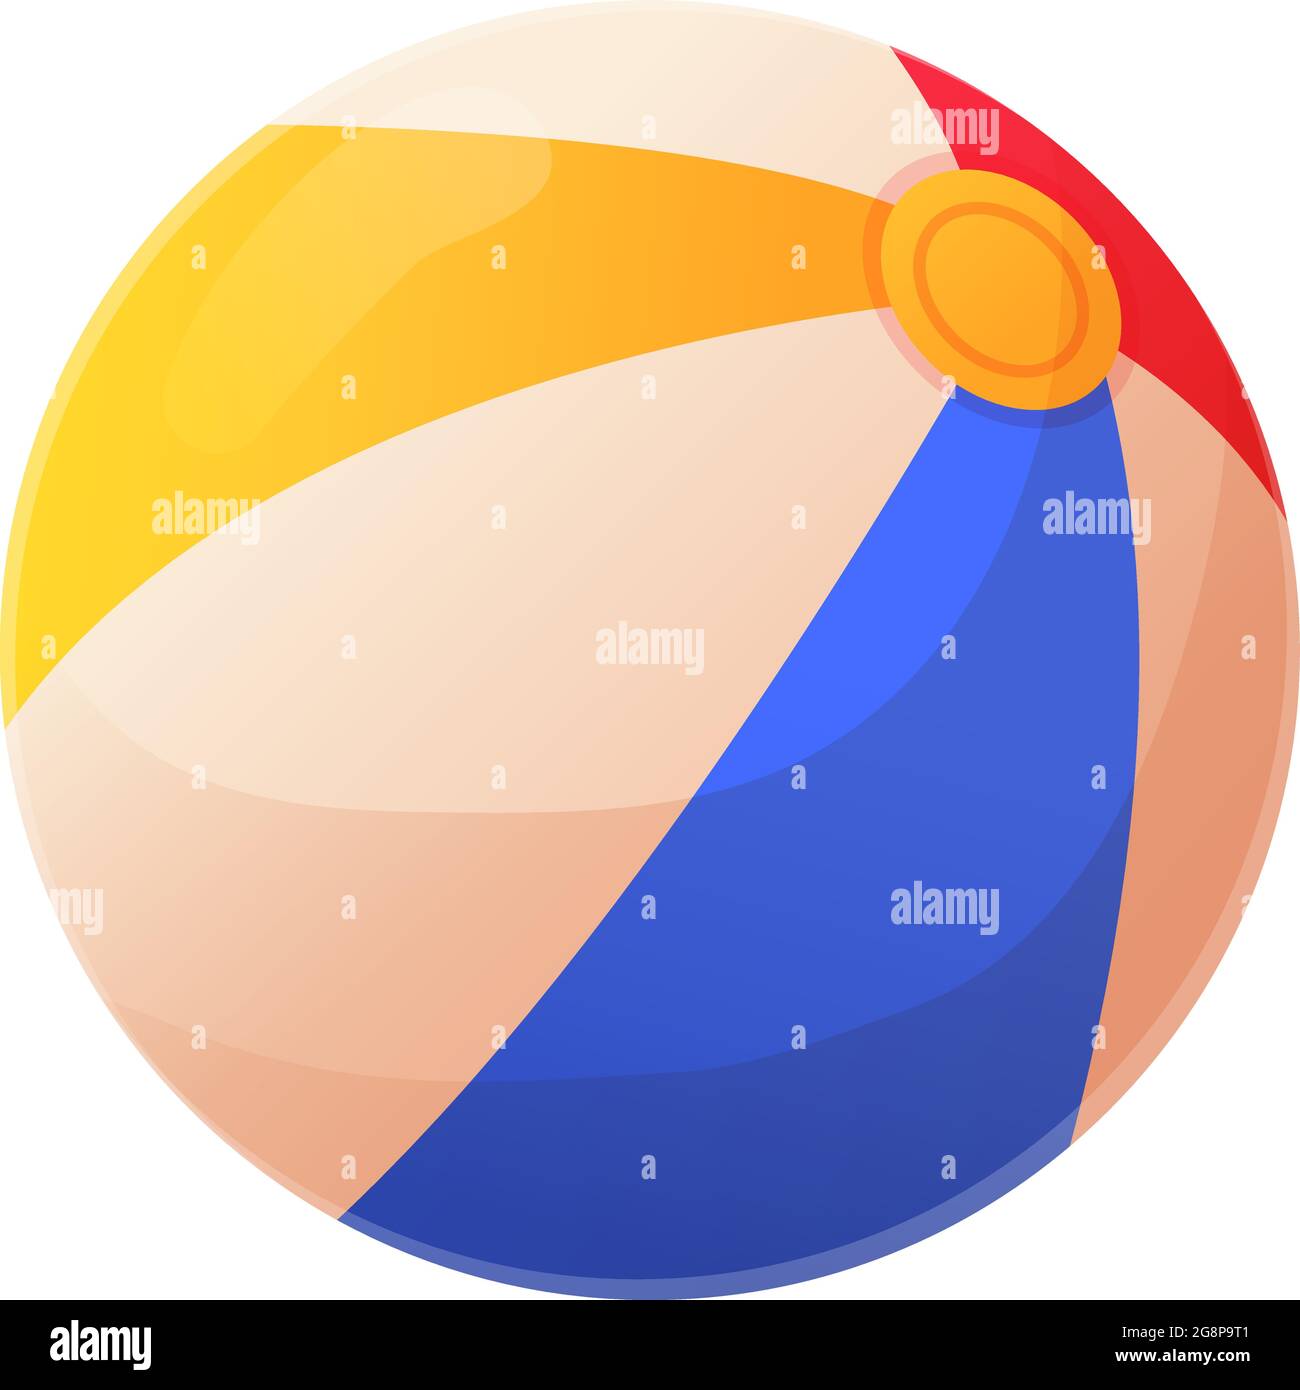 Heller unheimlicher Strandball. Rotes, gelbes, blaues Gummispielzeug-Symbol mit Streifen. Sommerurlaub, Wasser- oder Sandspiel-Konzept. Vektorgrafik für Rohware isoliert Stock Vektor